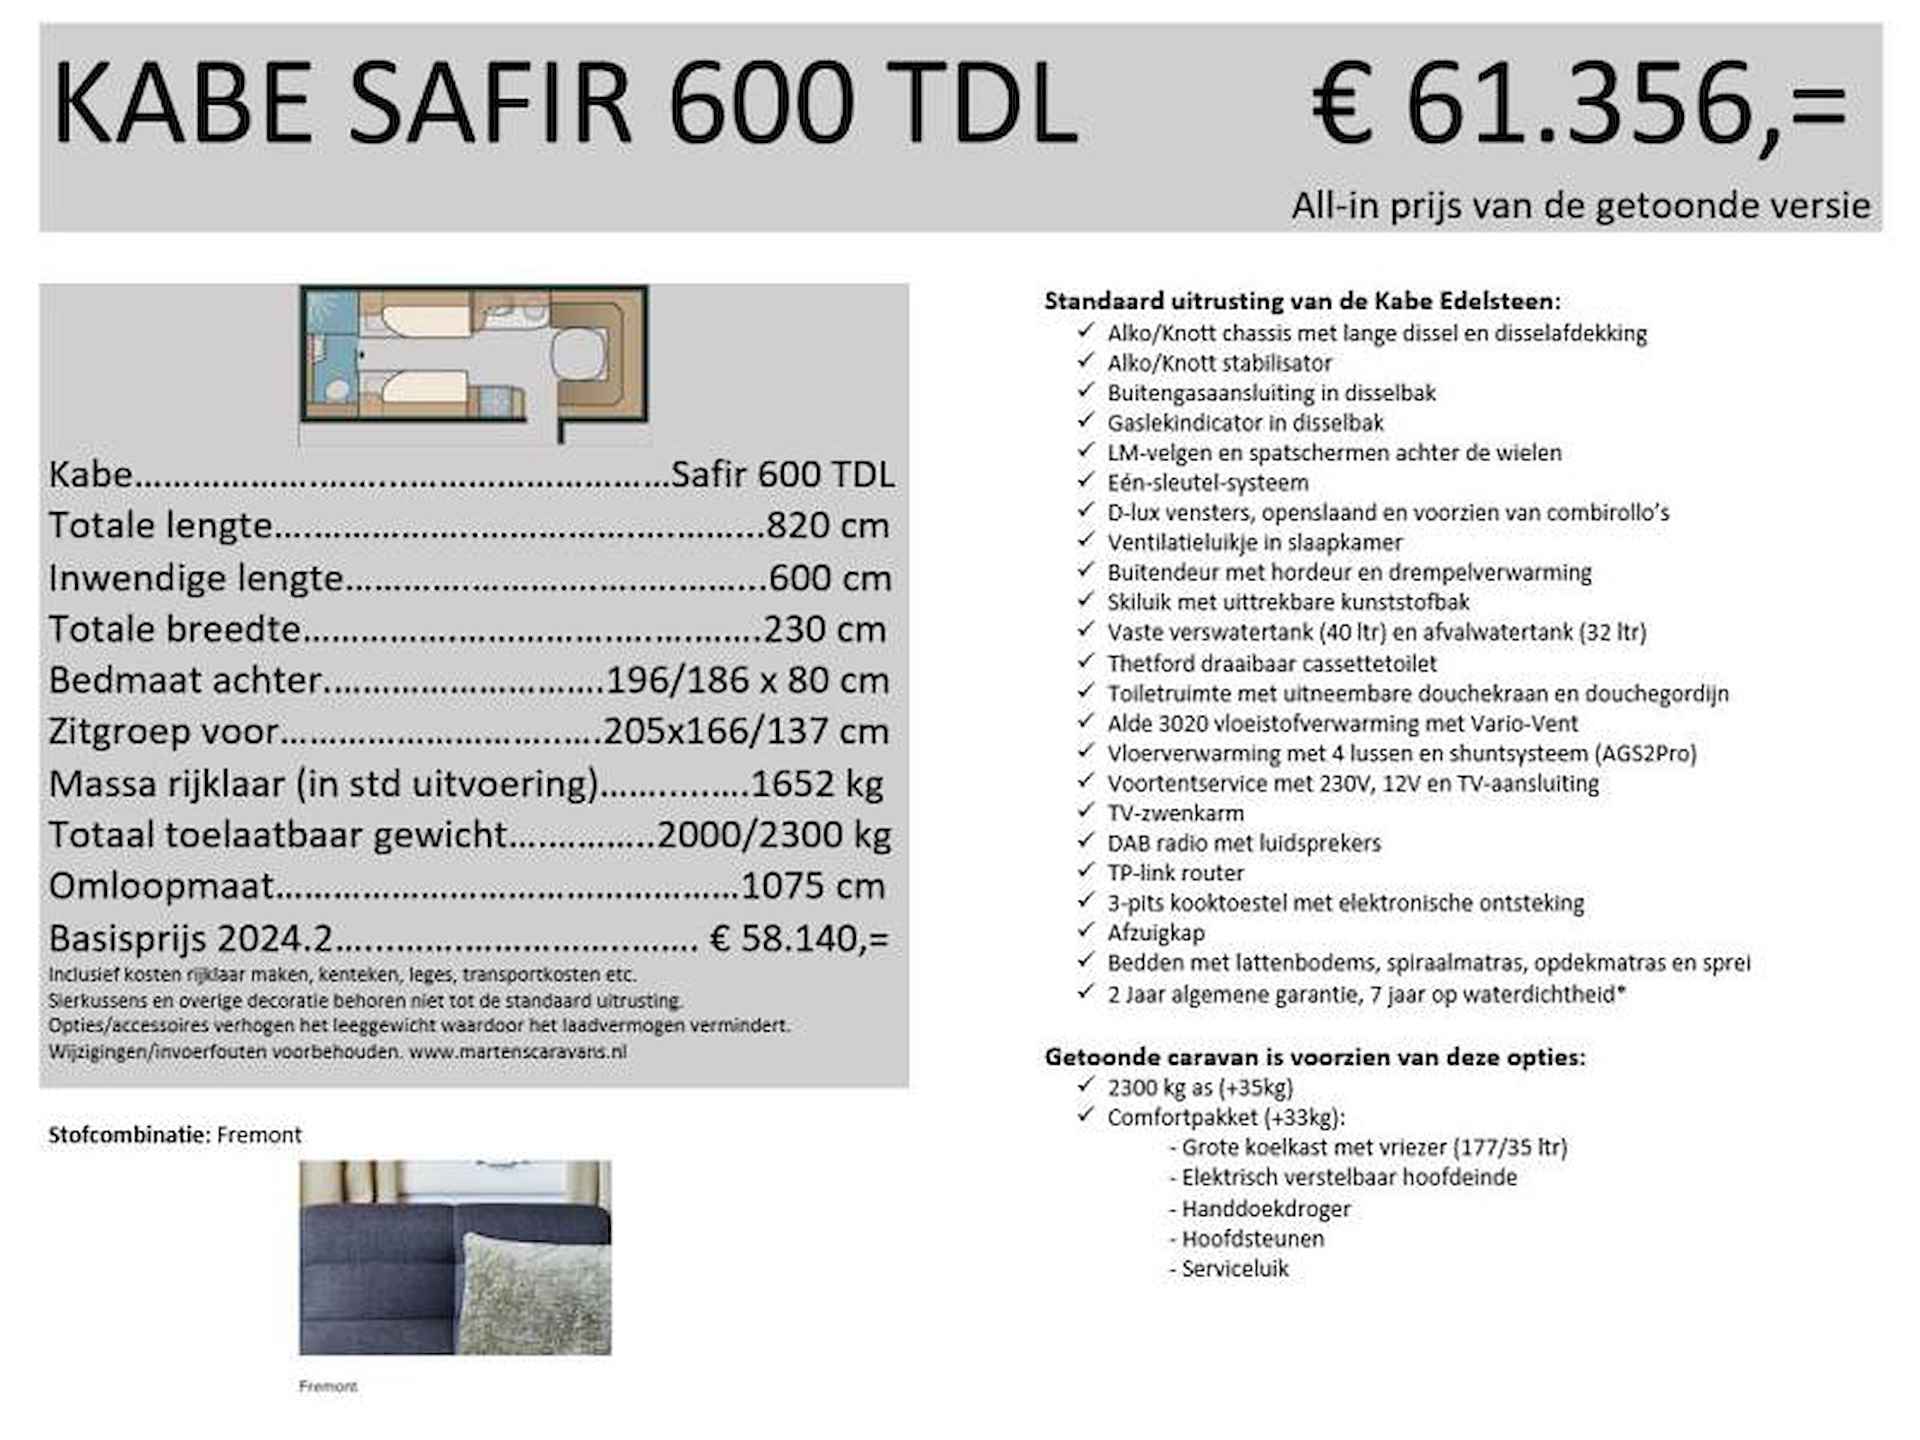 Kabe Safir 600 TDL - 24/25